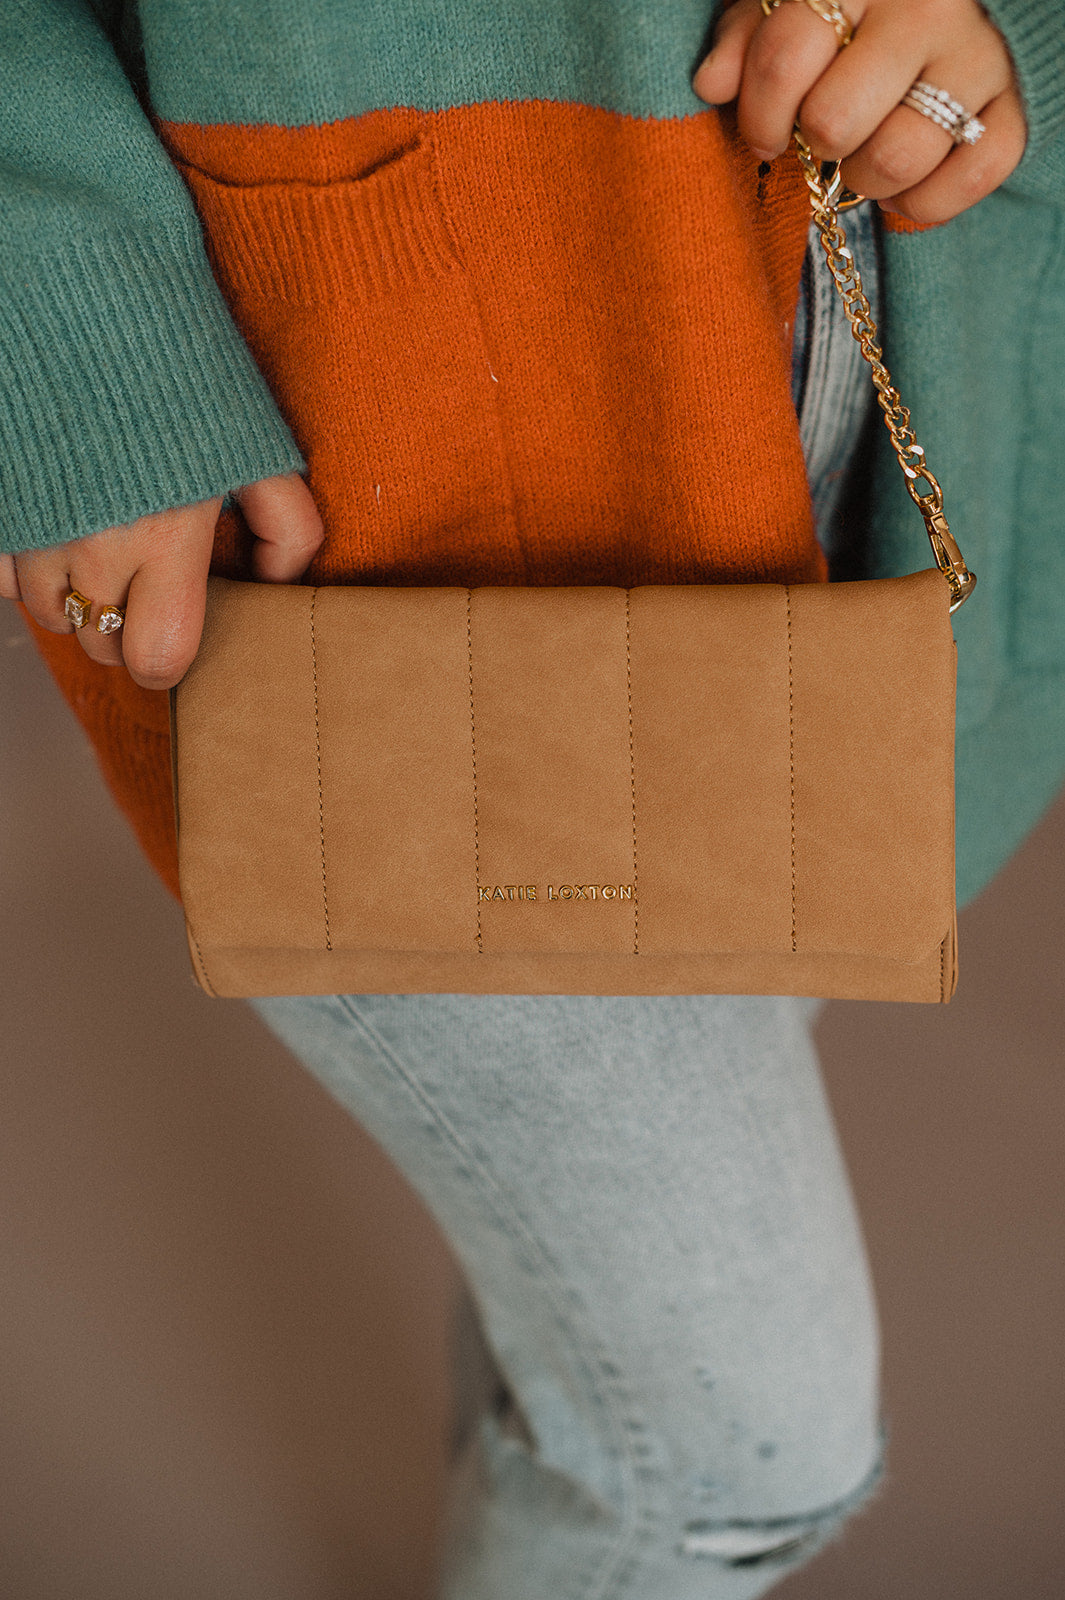 Women's Handbags | Peachy Keen Boutique